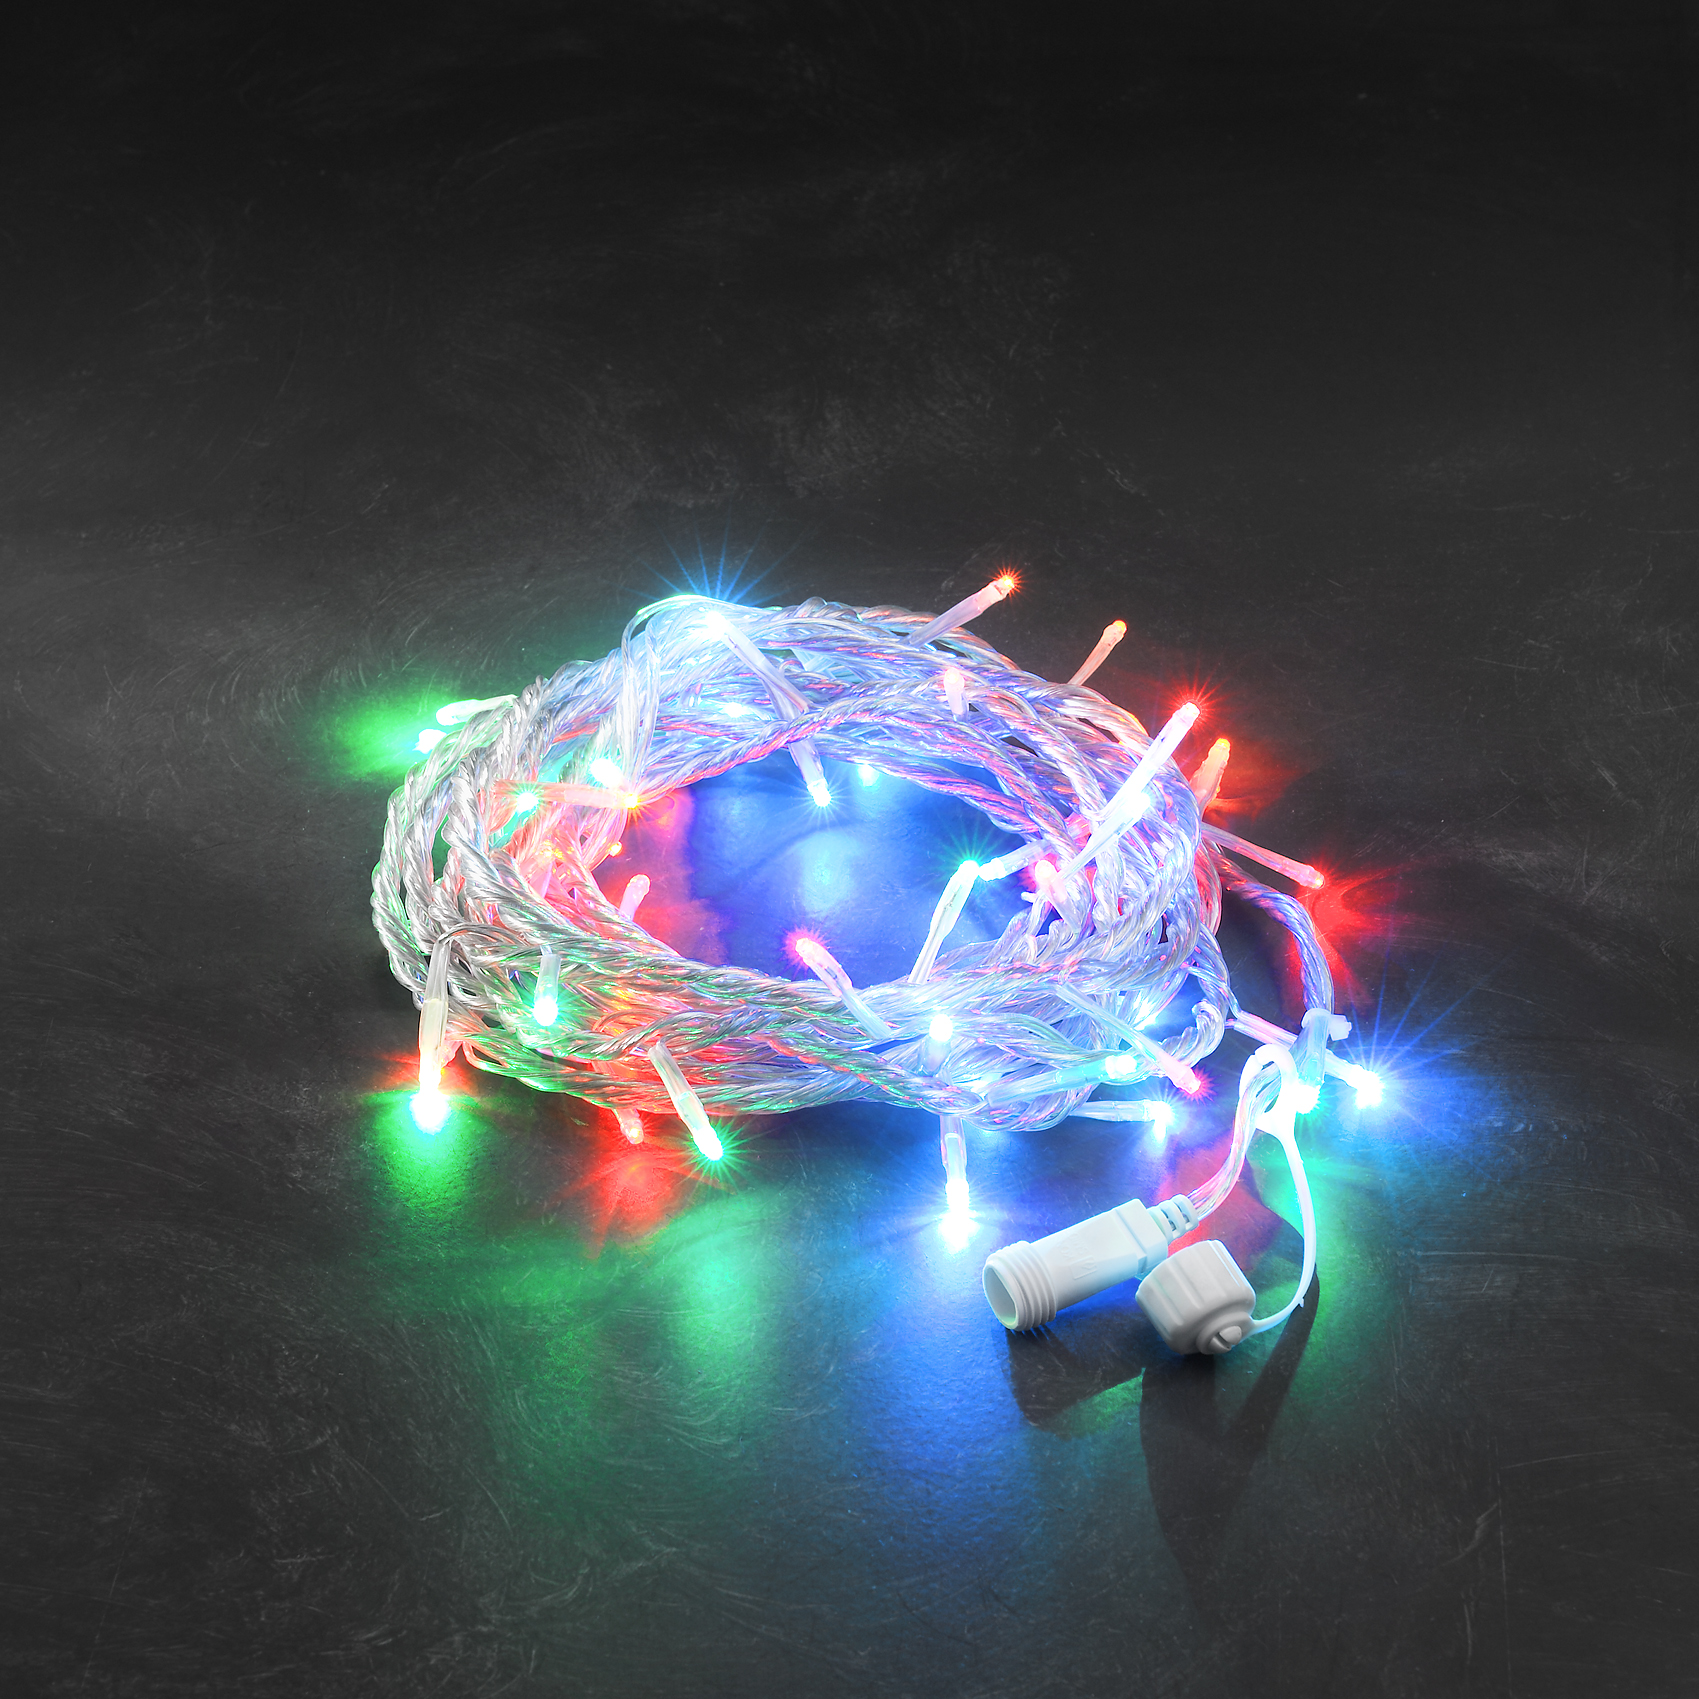 LED System 24V - Multi-Coloured Chain of Light, 100 LEDs